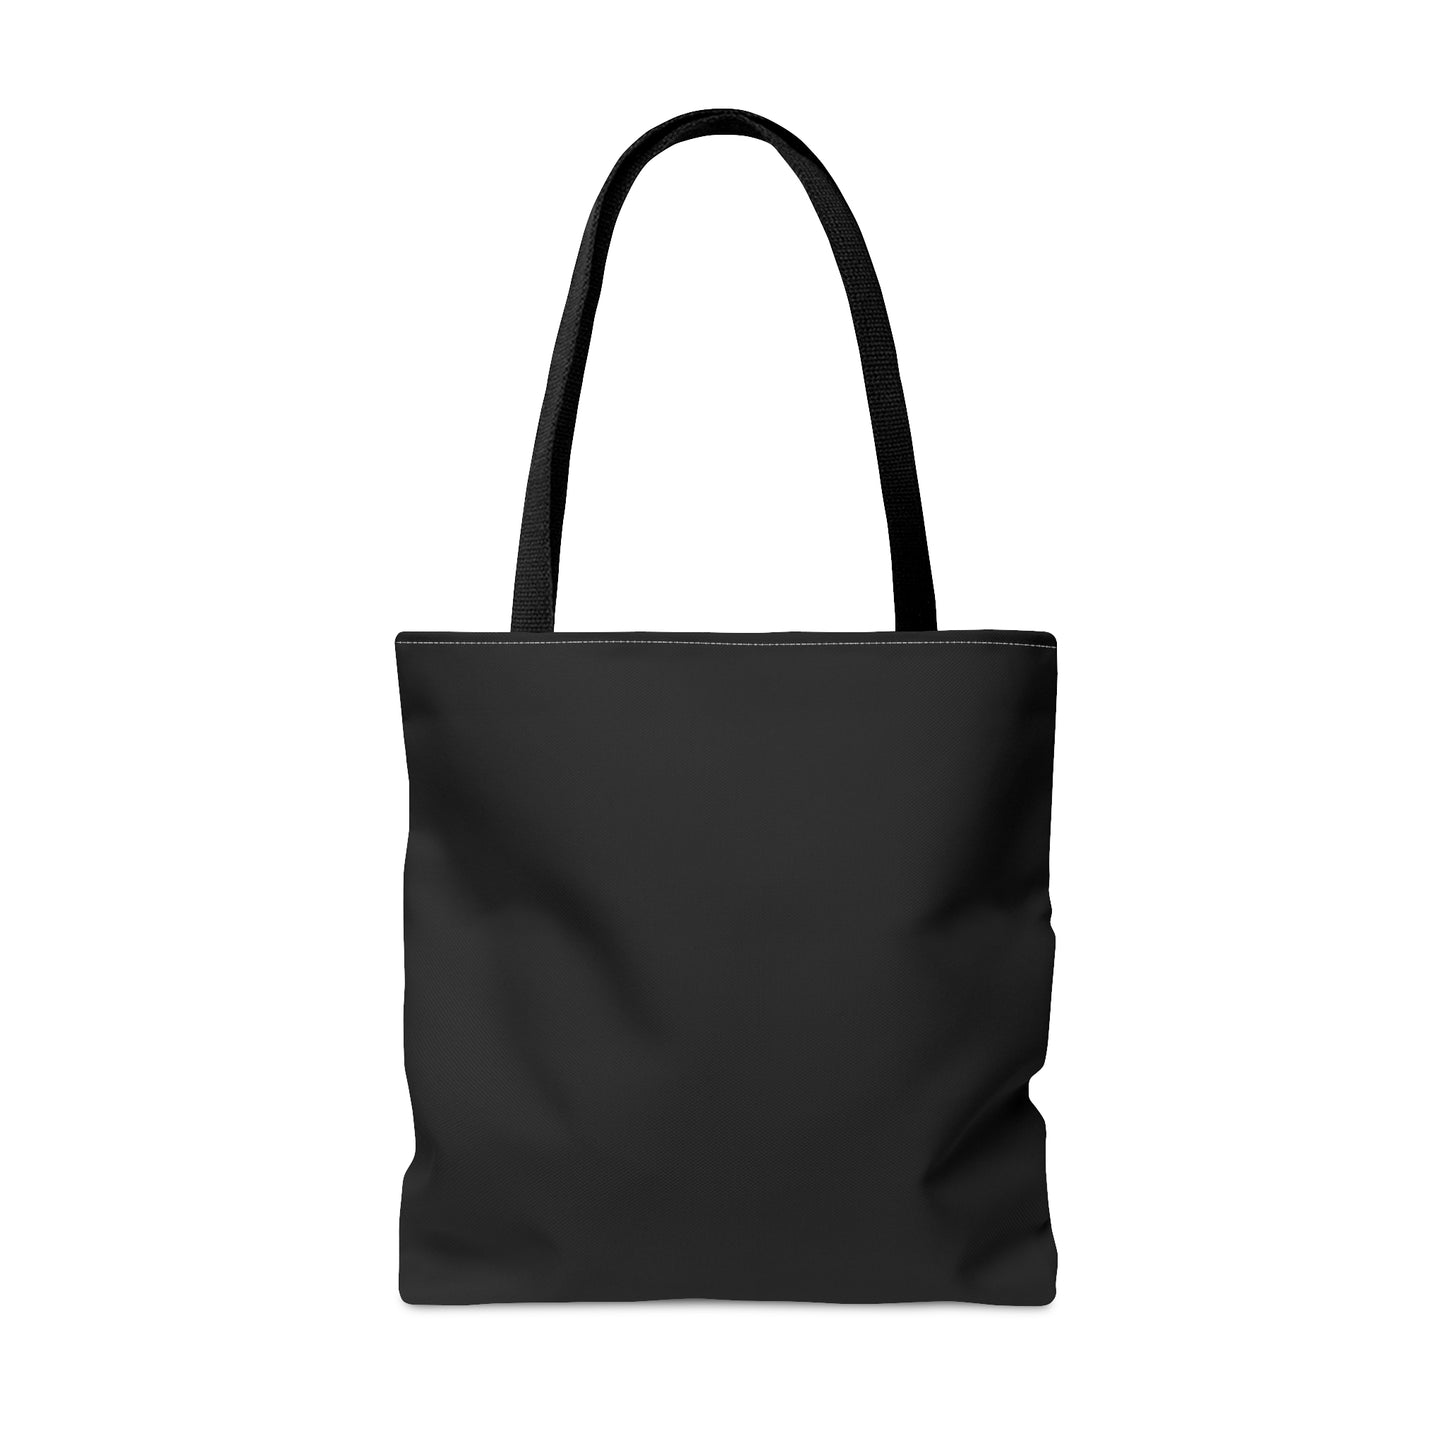 ATBL Tote Bag Black Logo (Classic)